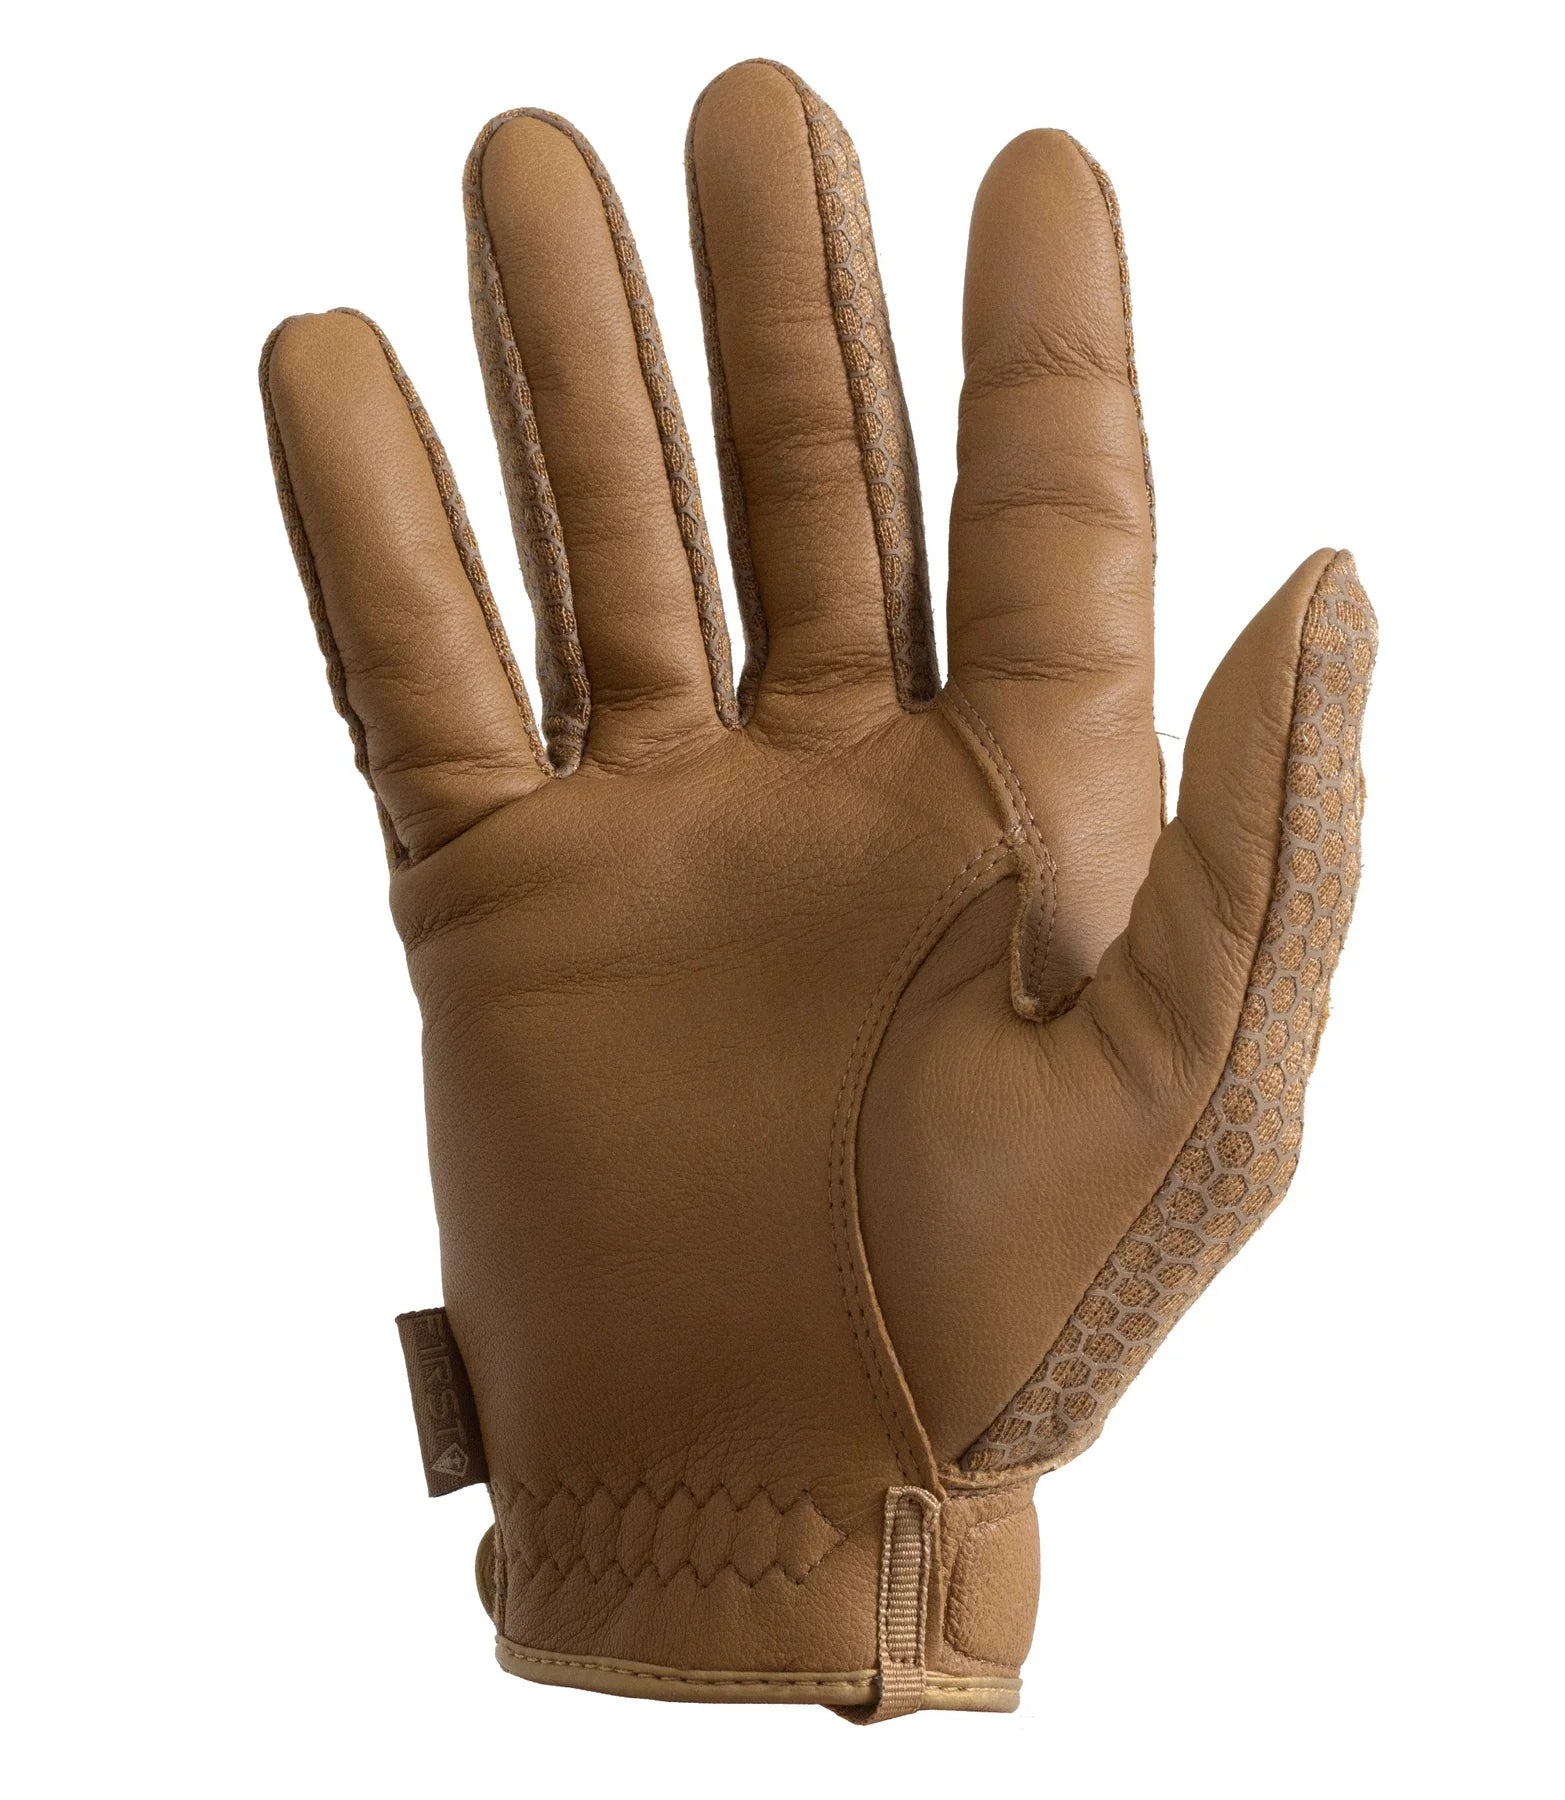 High Abrasion 2.0 Glove